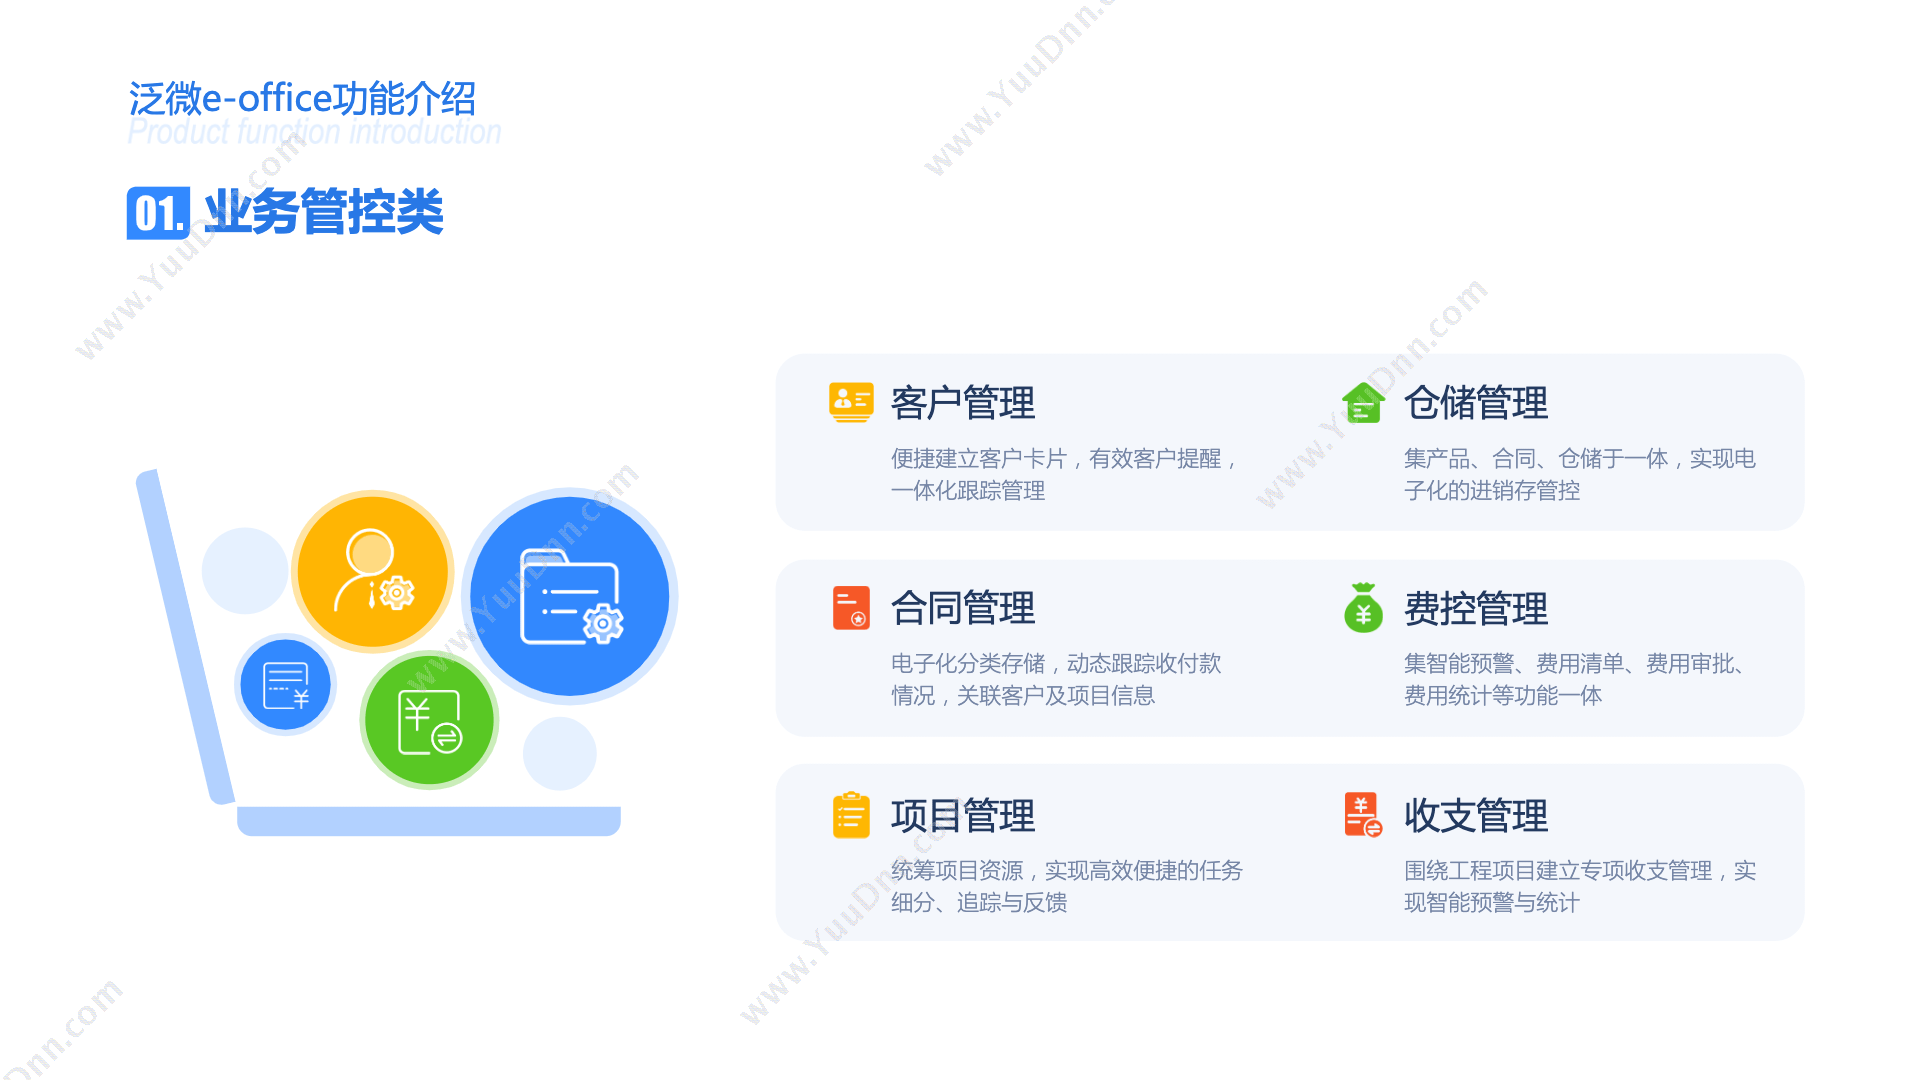 上海泛微软件有限公司 泛微e-office客户管理/客户关系管理/CRM 客户管理